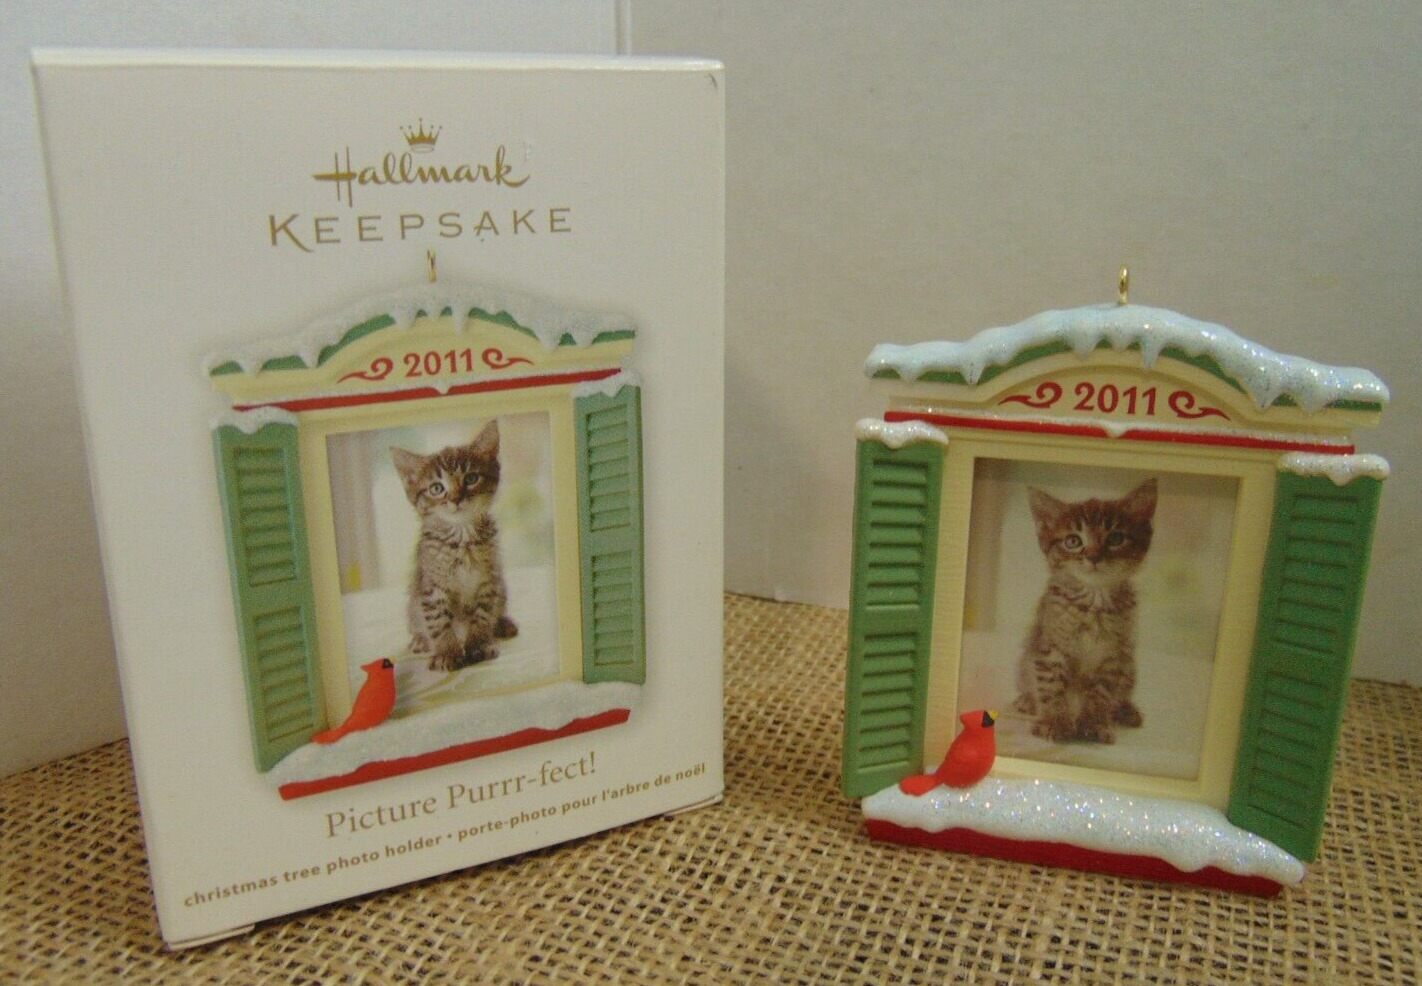 2011 Hallmark Ornament ~  Picture Purr-fect - Cat Photo NIB